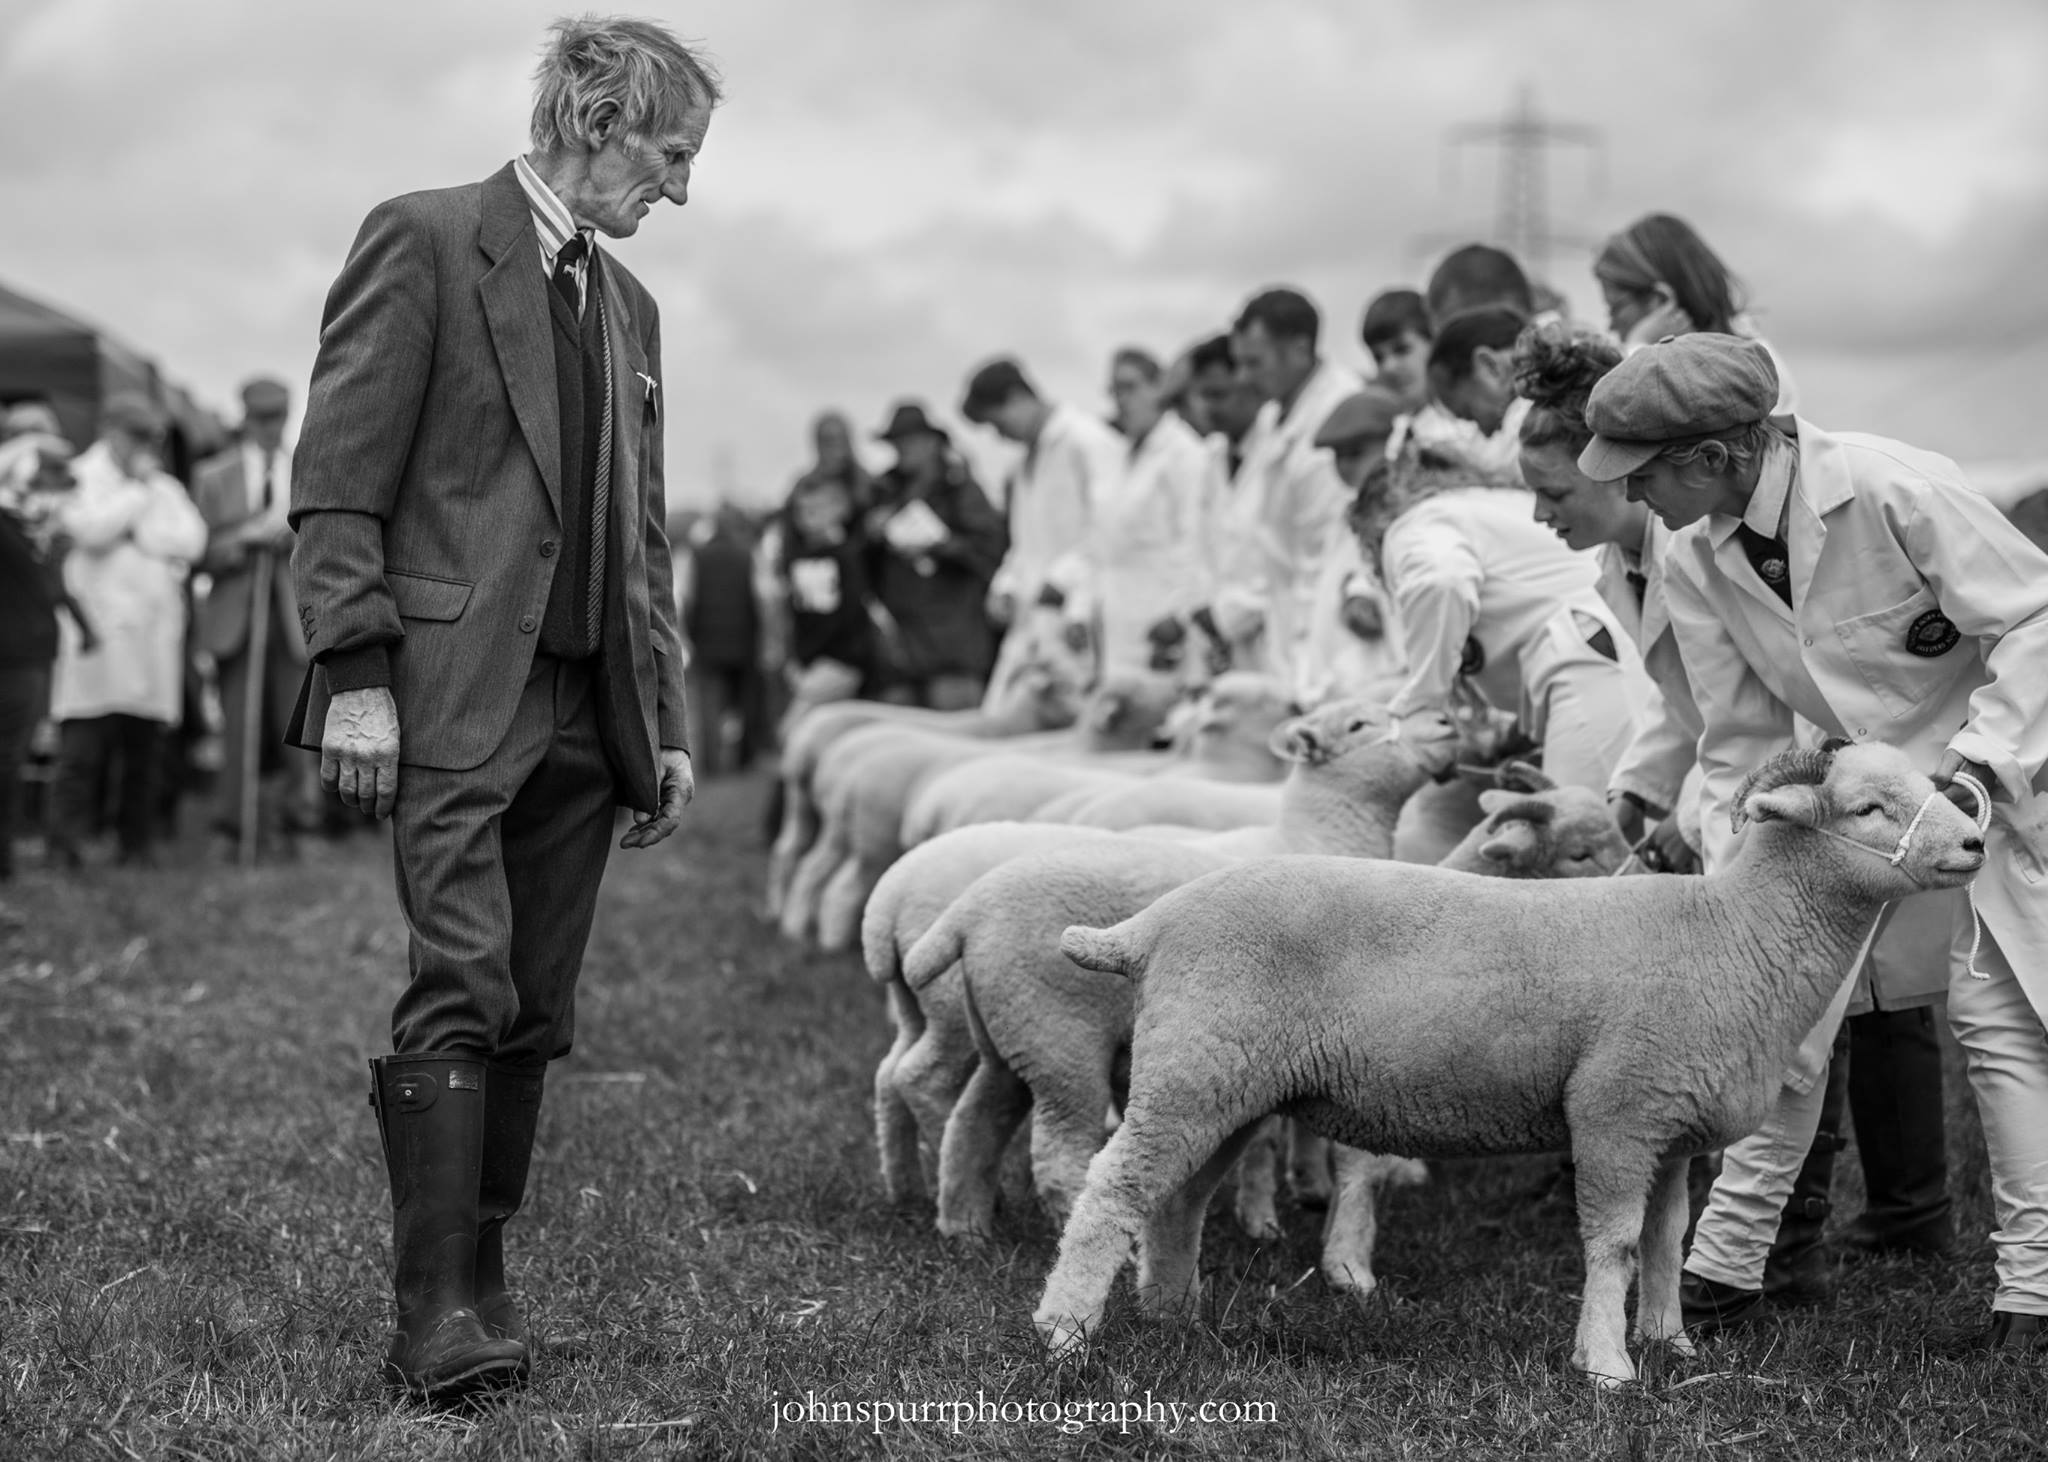 303 John Spurr Exmoor Horn sheep being judged.